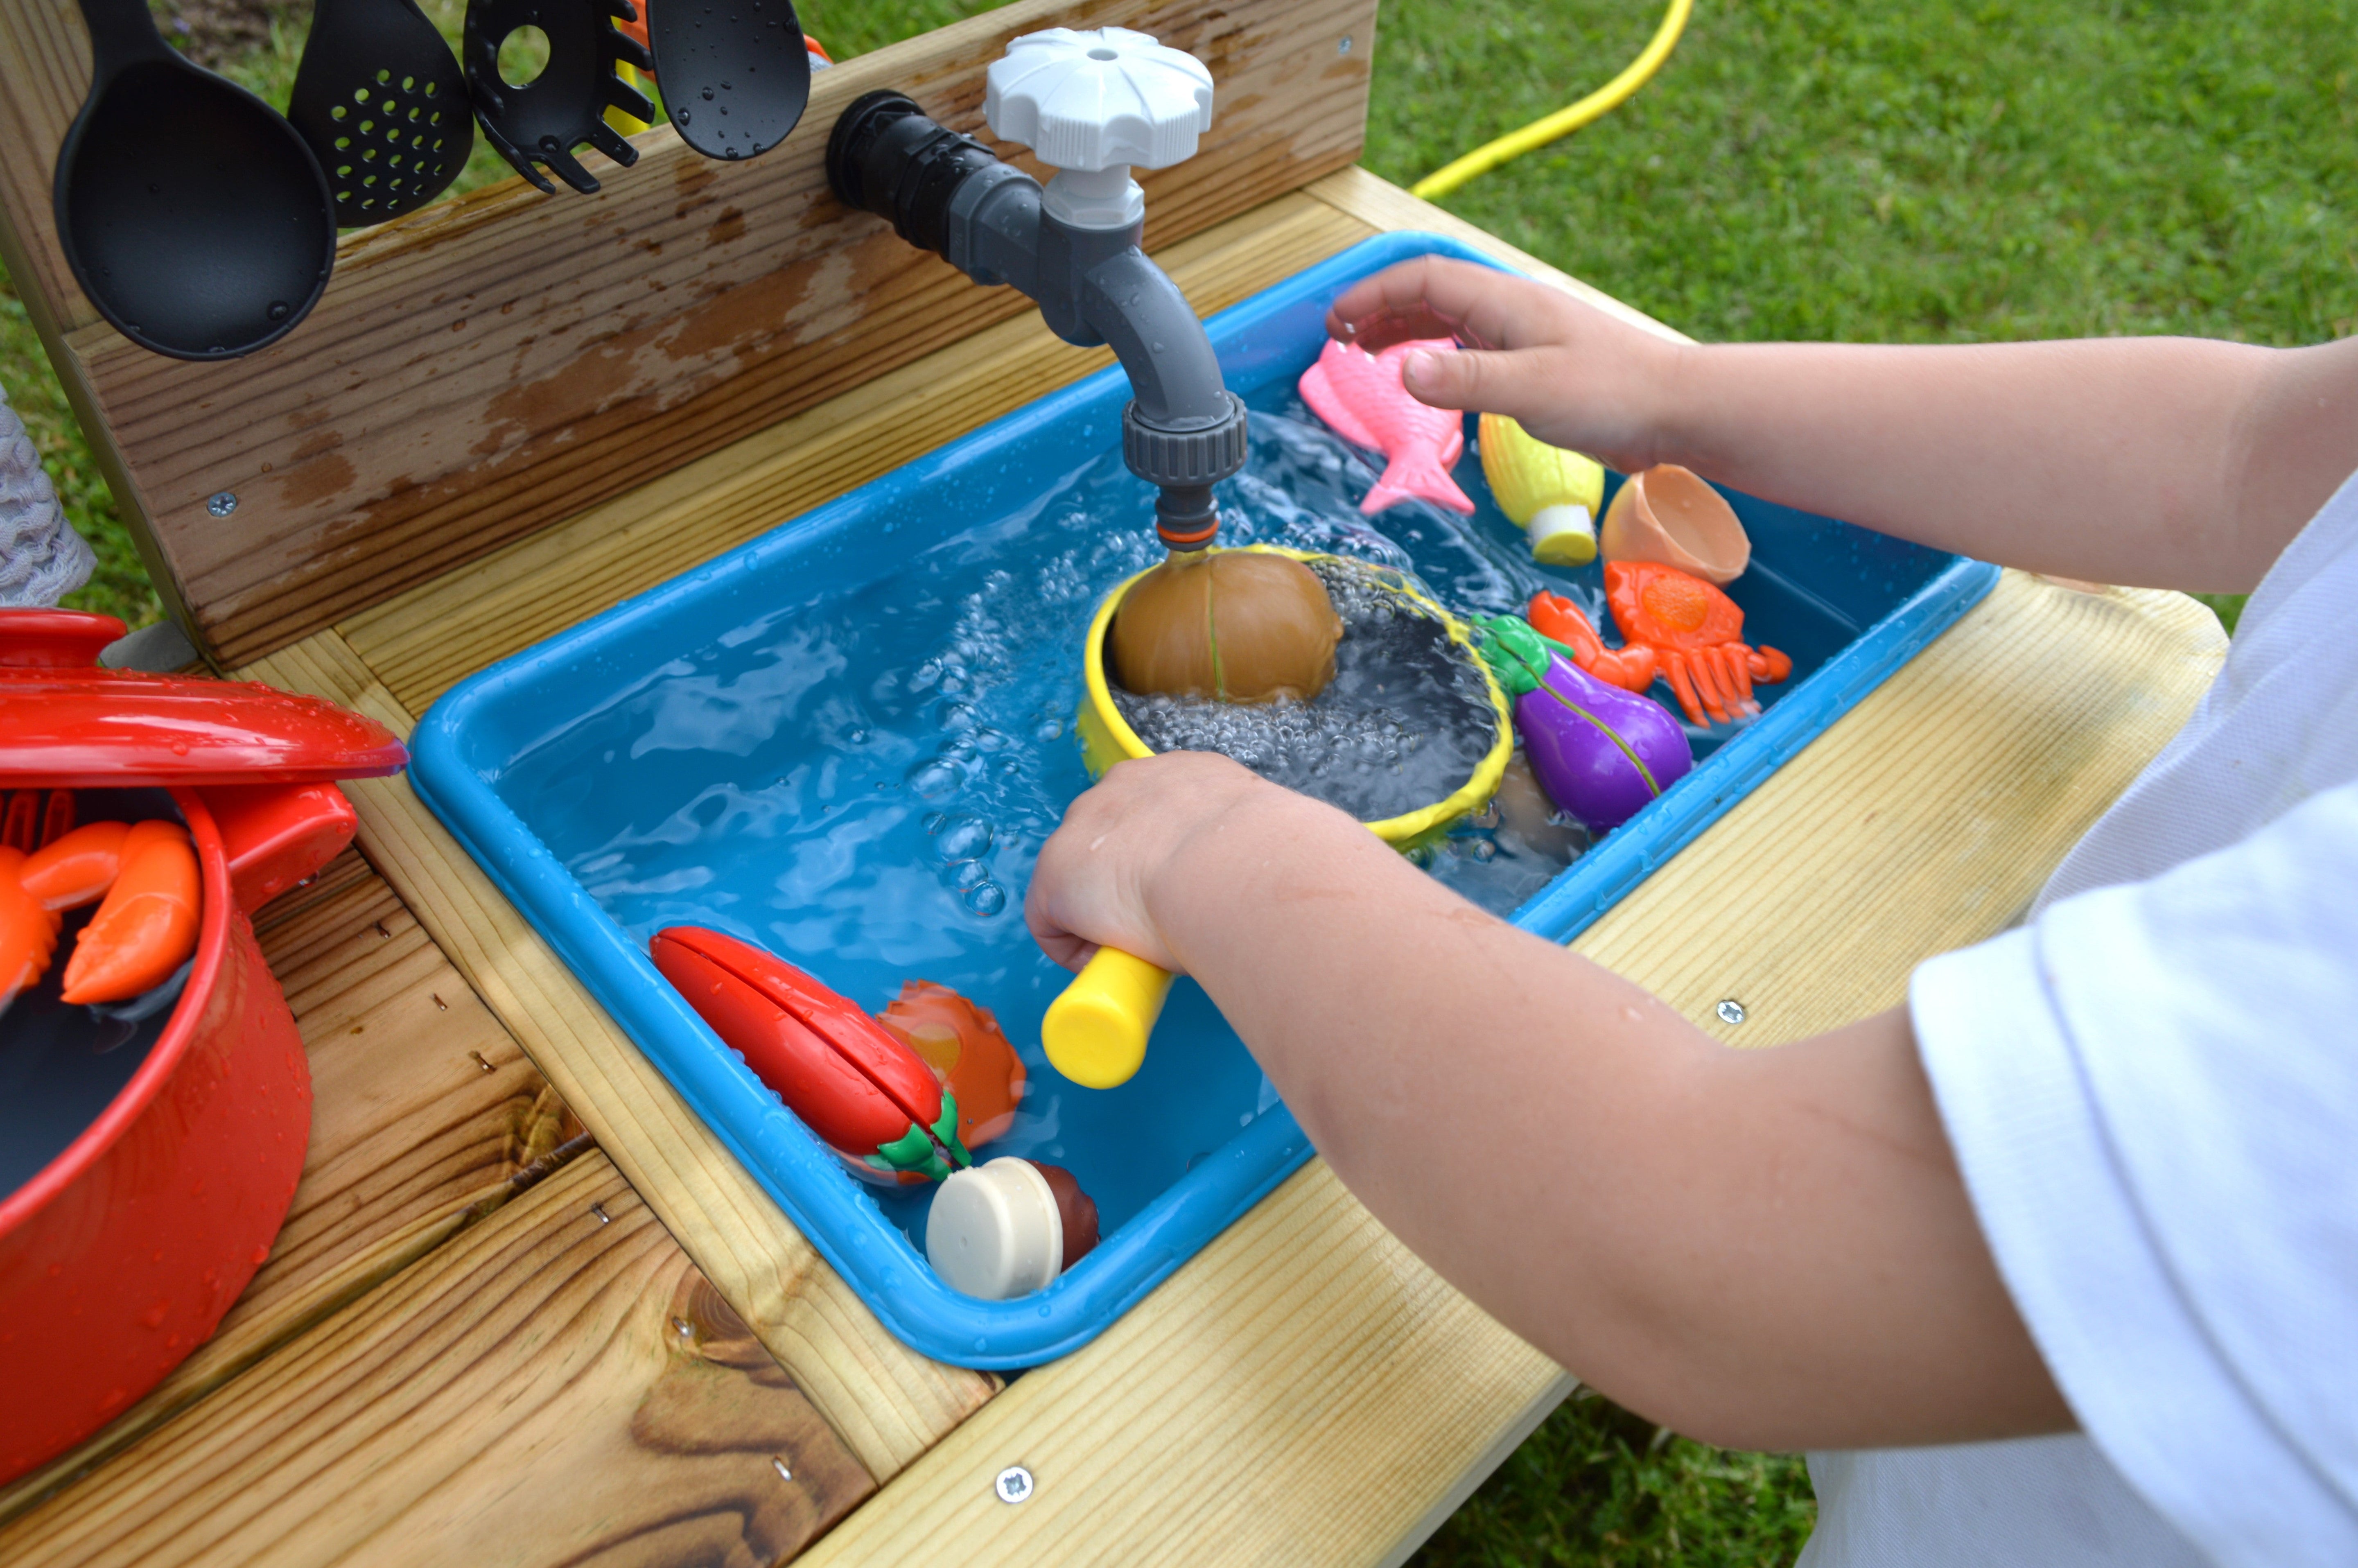 Wooden Mud Kitchens for Children outdoor activities in your garden